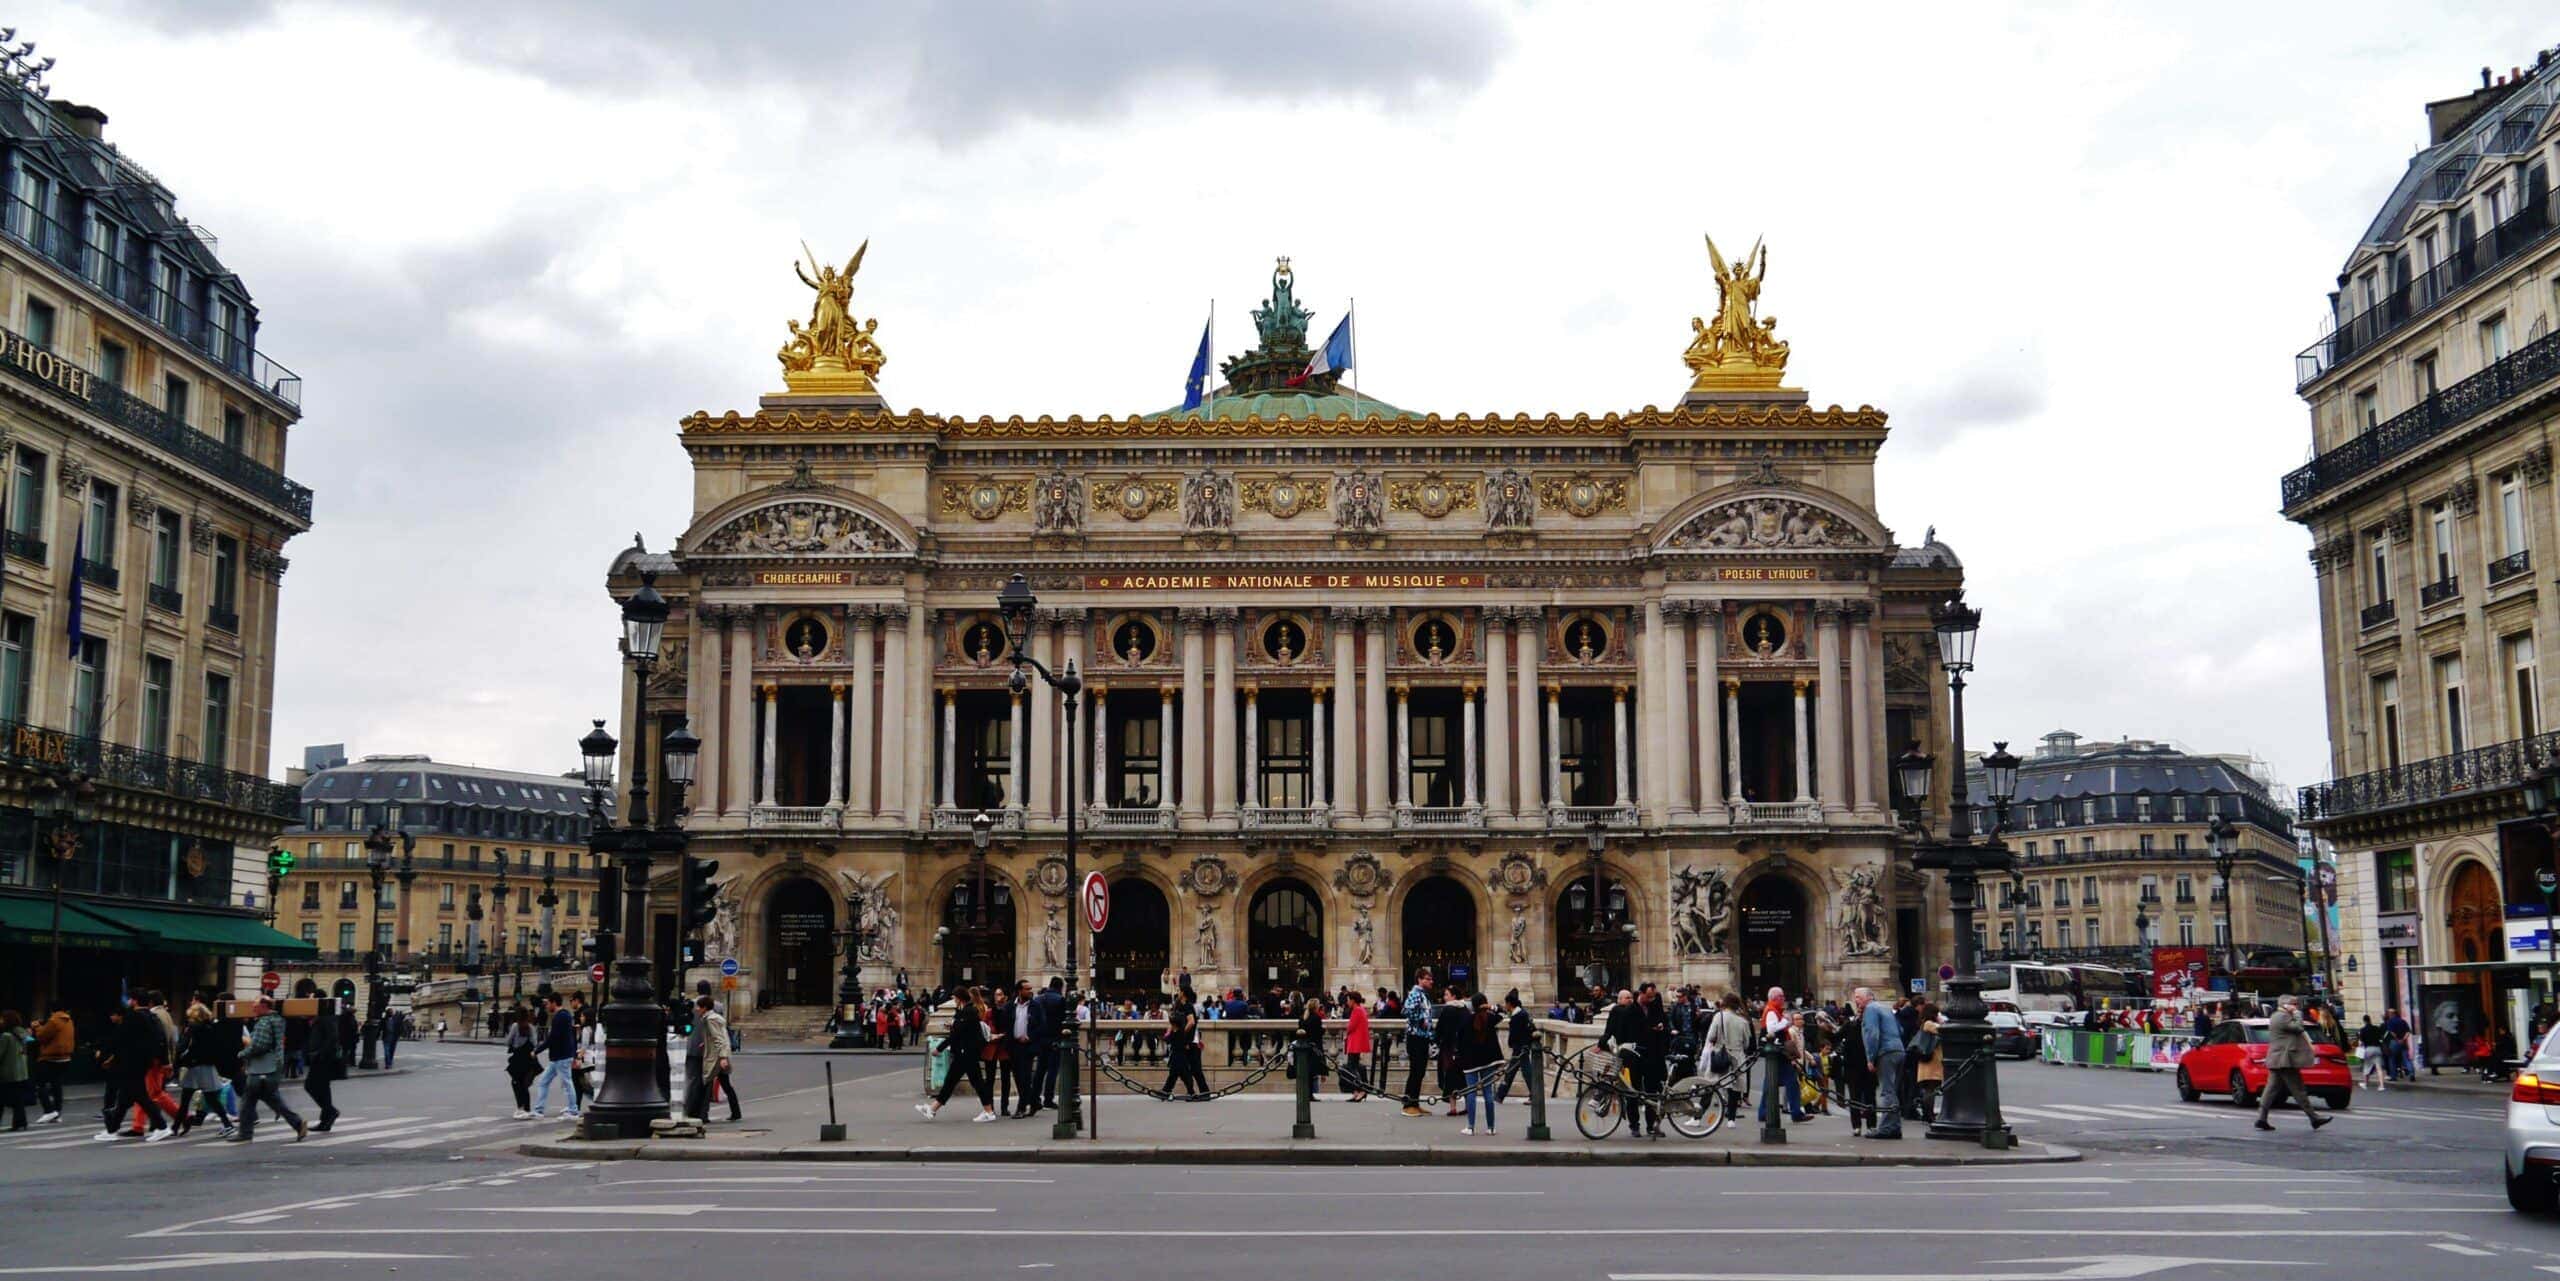 اپرای پاریس به تعداد اشاره می کند